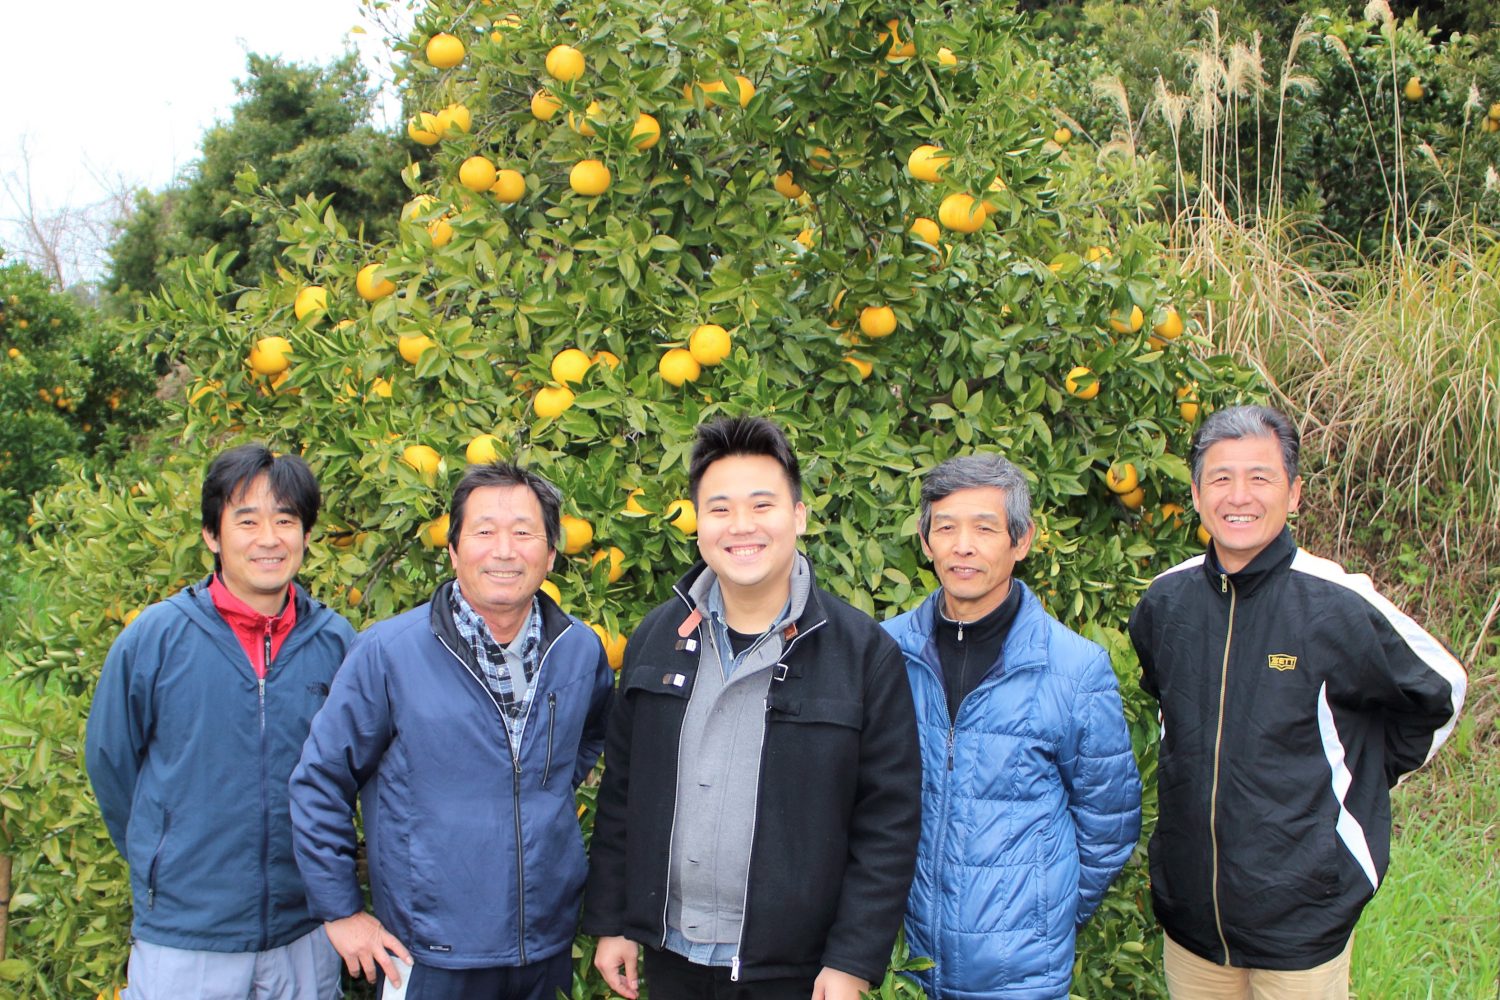 大土橋シェフ澤村さん訪問 柑橘畑で記念撮影